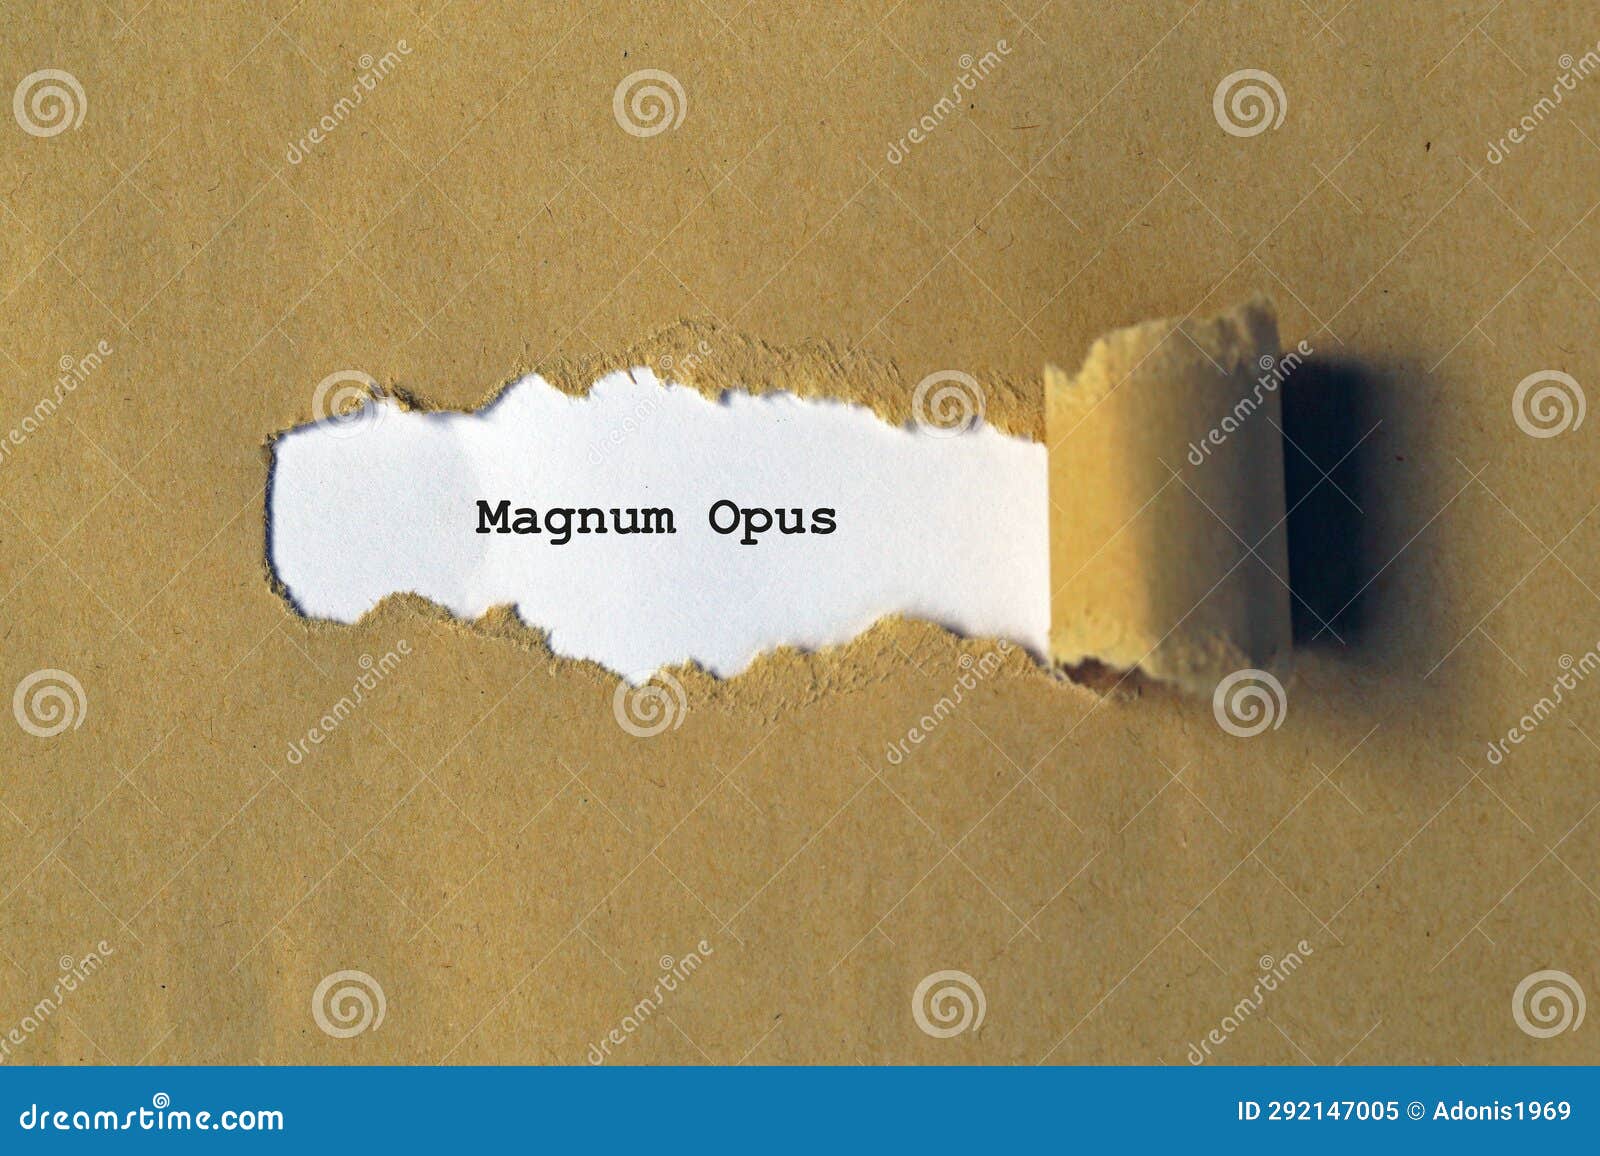 magnum opus on white paper